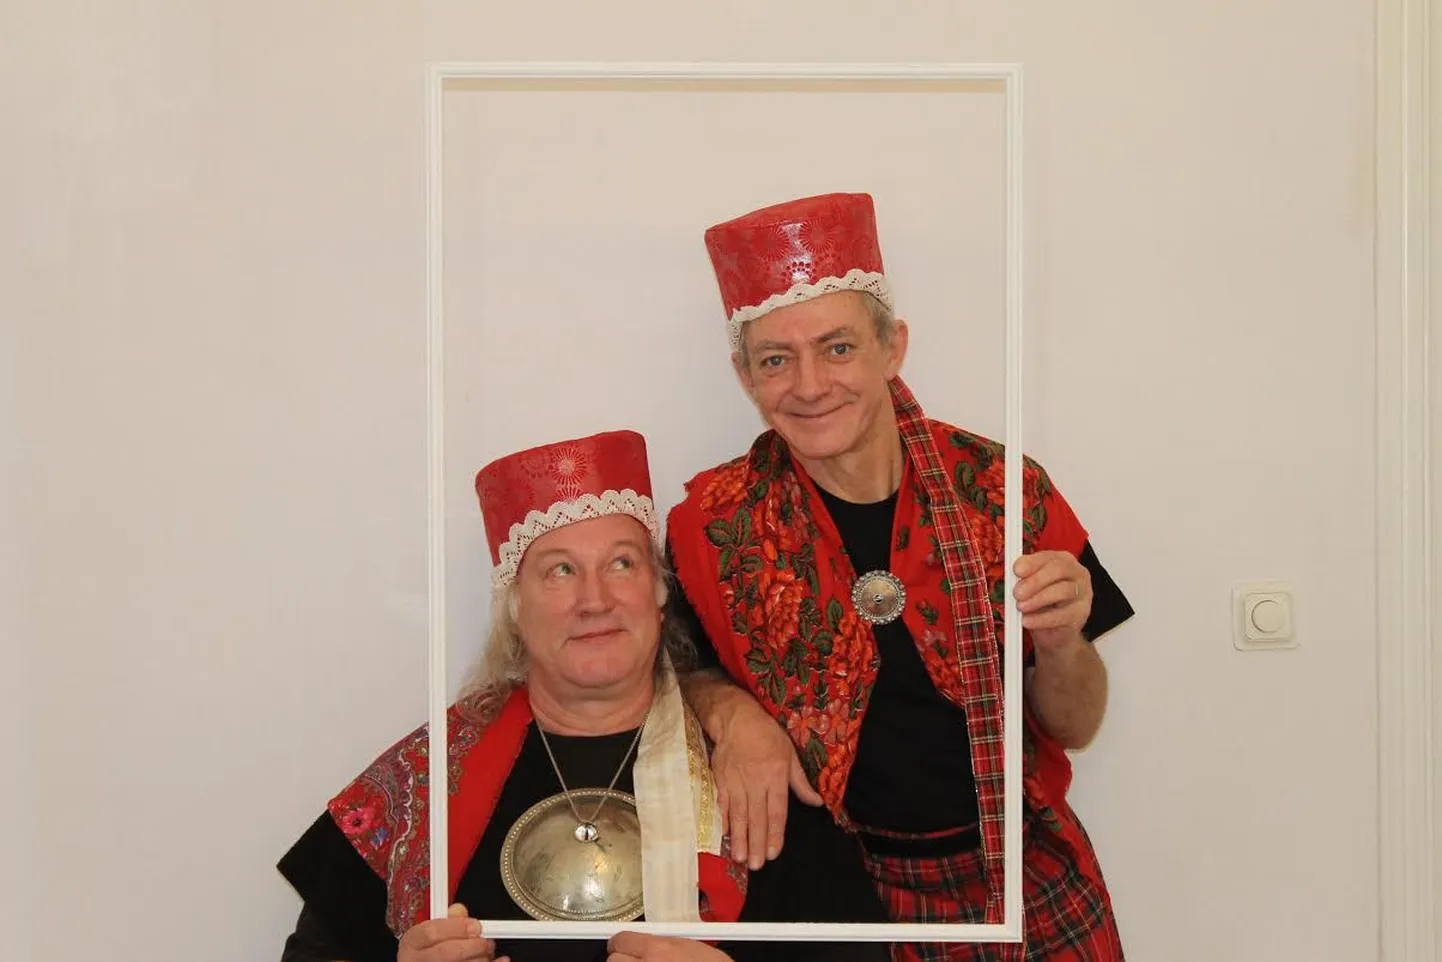 Täiskasvanutele mõeldud komöödiat "Punamütsikesed" saab näha Õisu mõisas 9. ja 19. juulil.